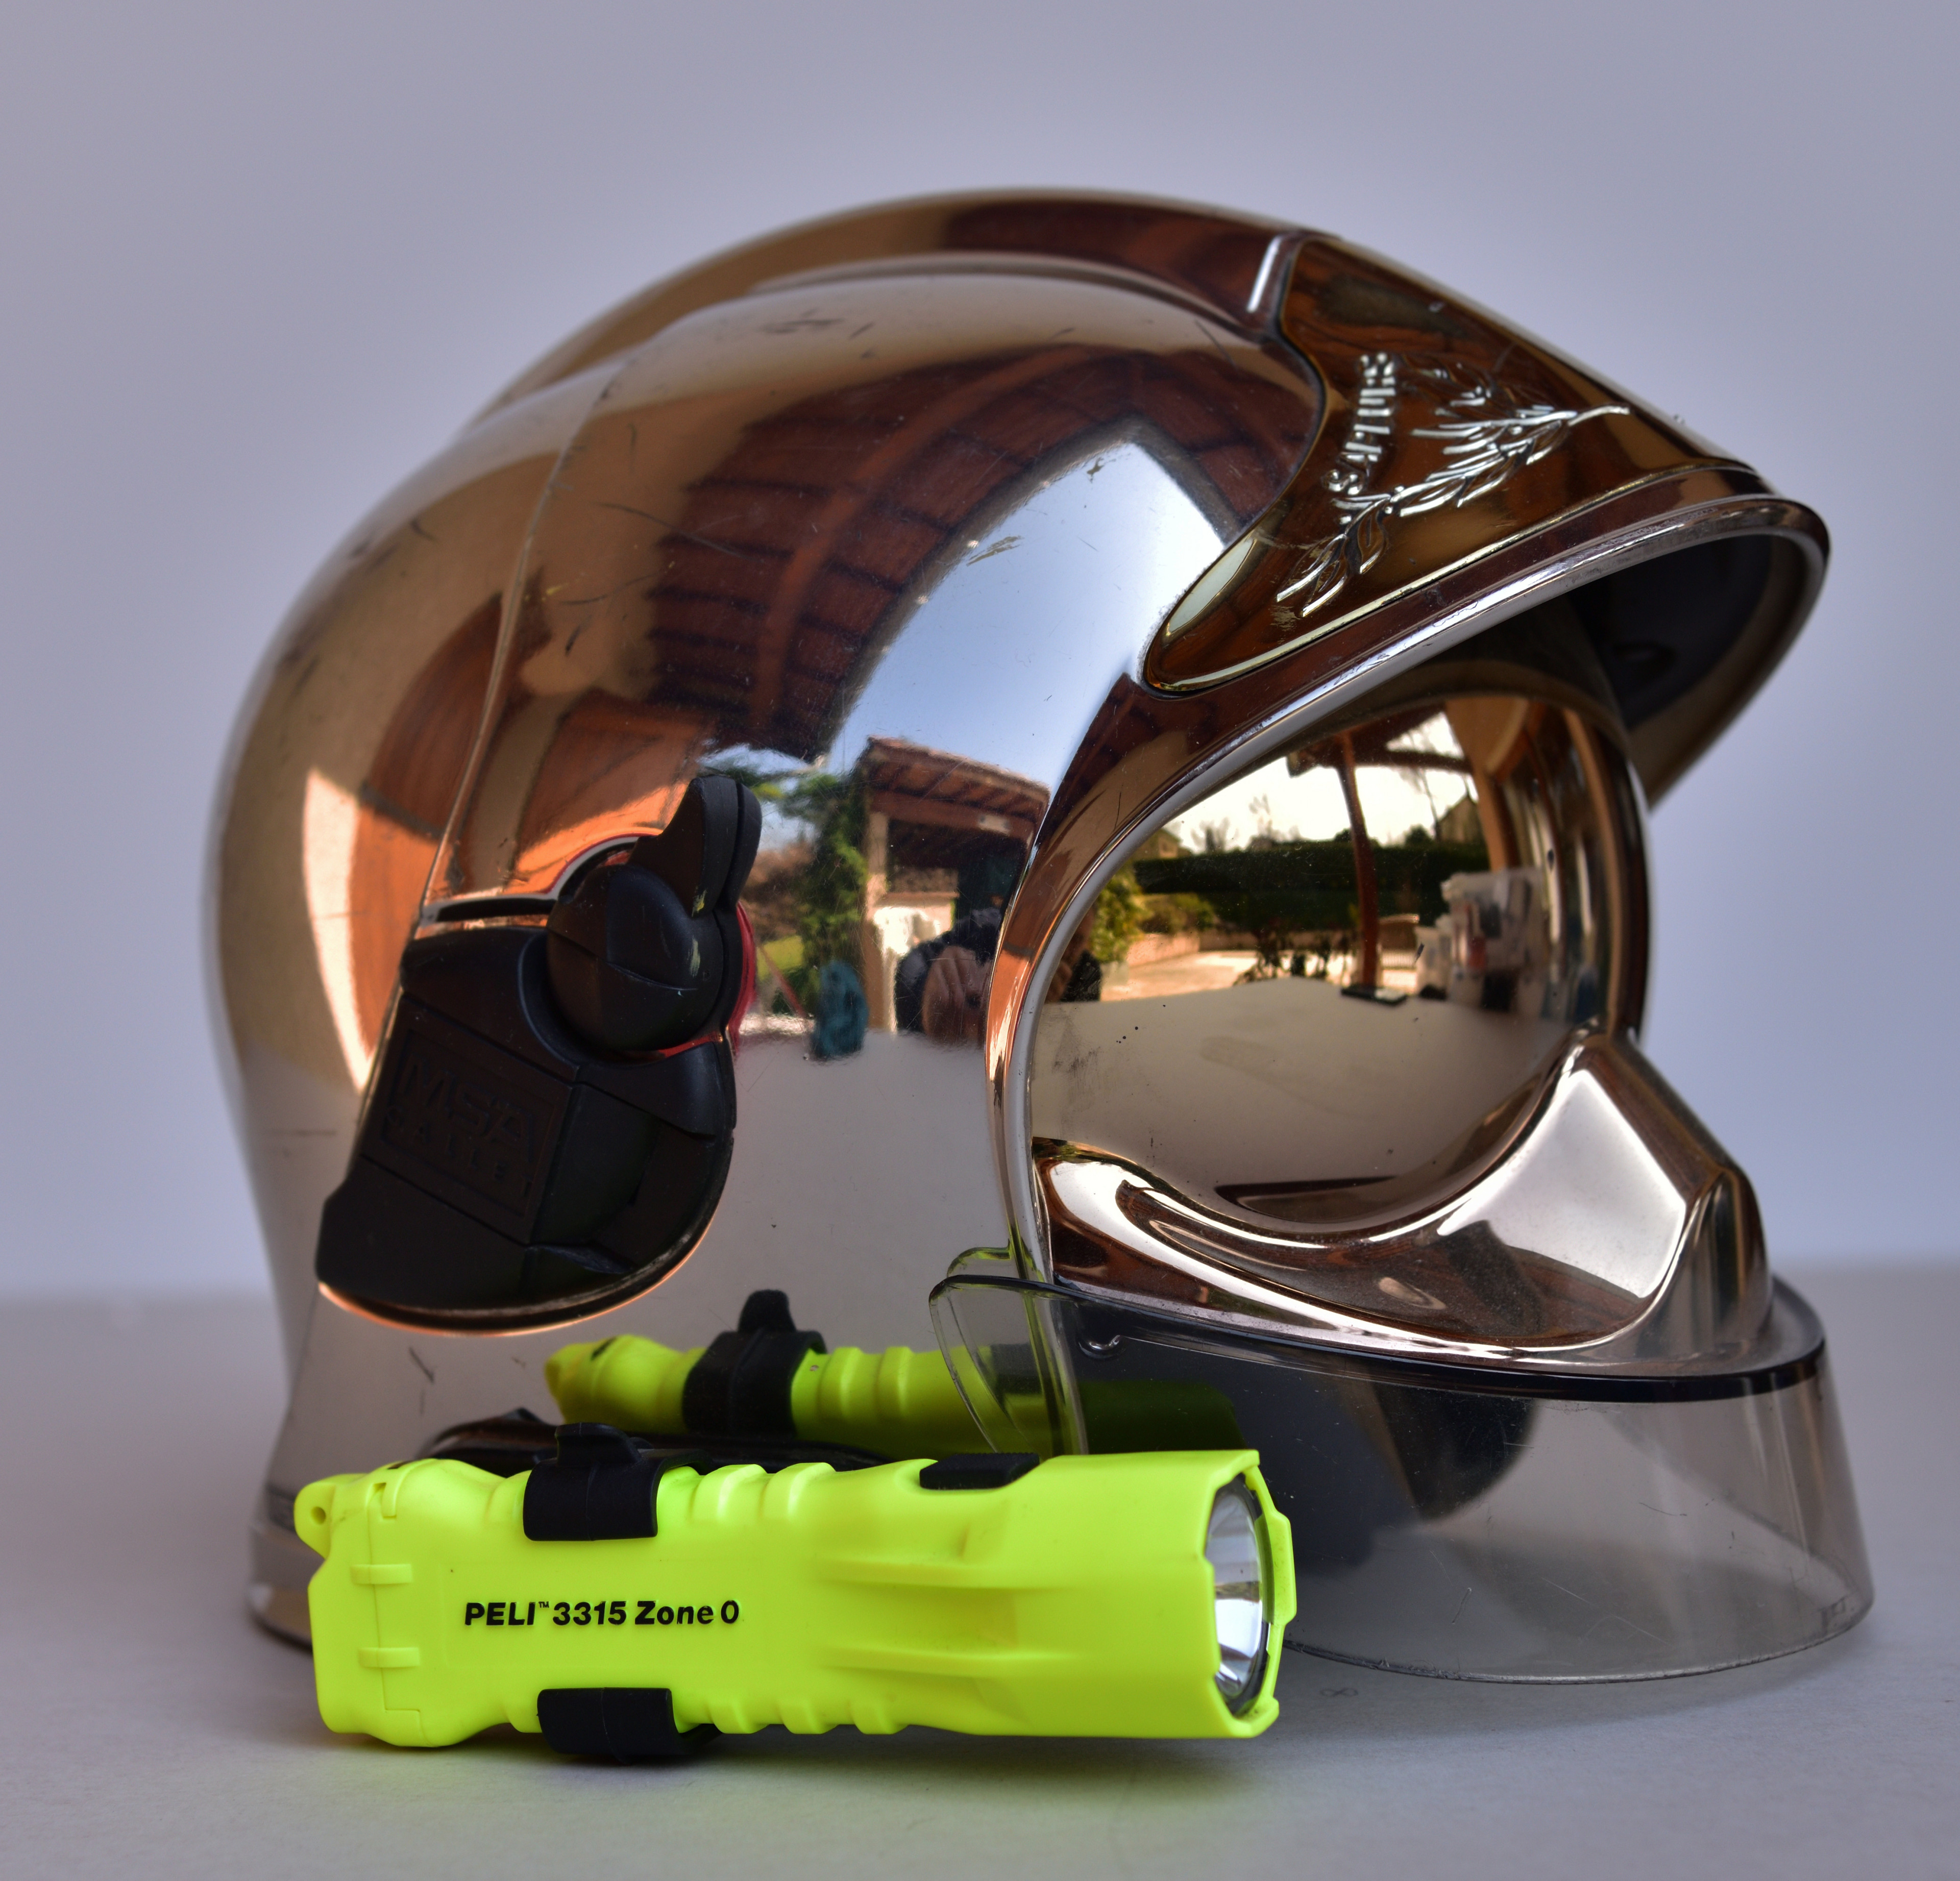 Porte-clés casque F1 3D